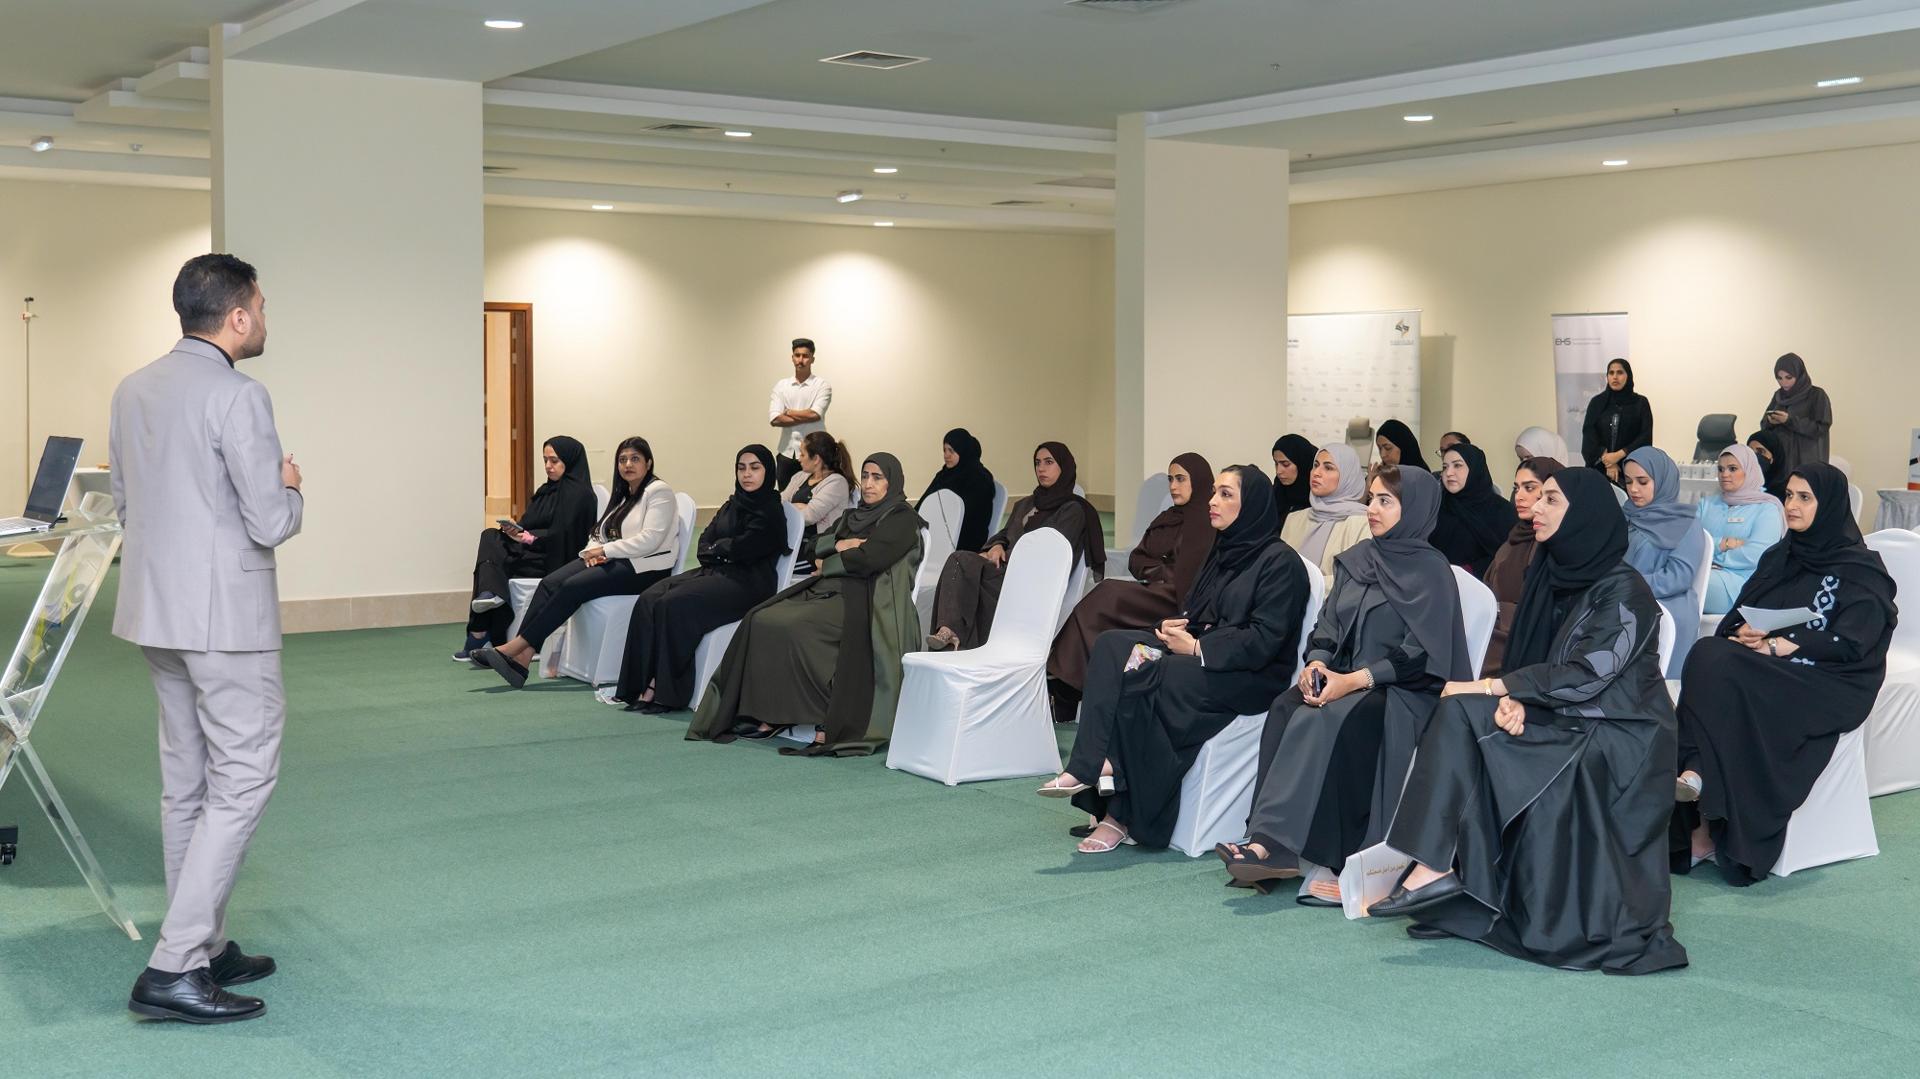 مجلس سيدات أعمال عجمان يطلق "مسابقة تحدي 30 يوم" لموظفات الجهات الحكومية وعضوات المجلس